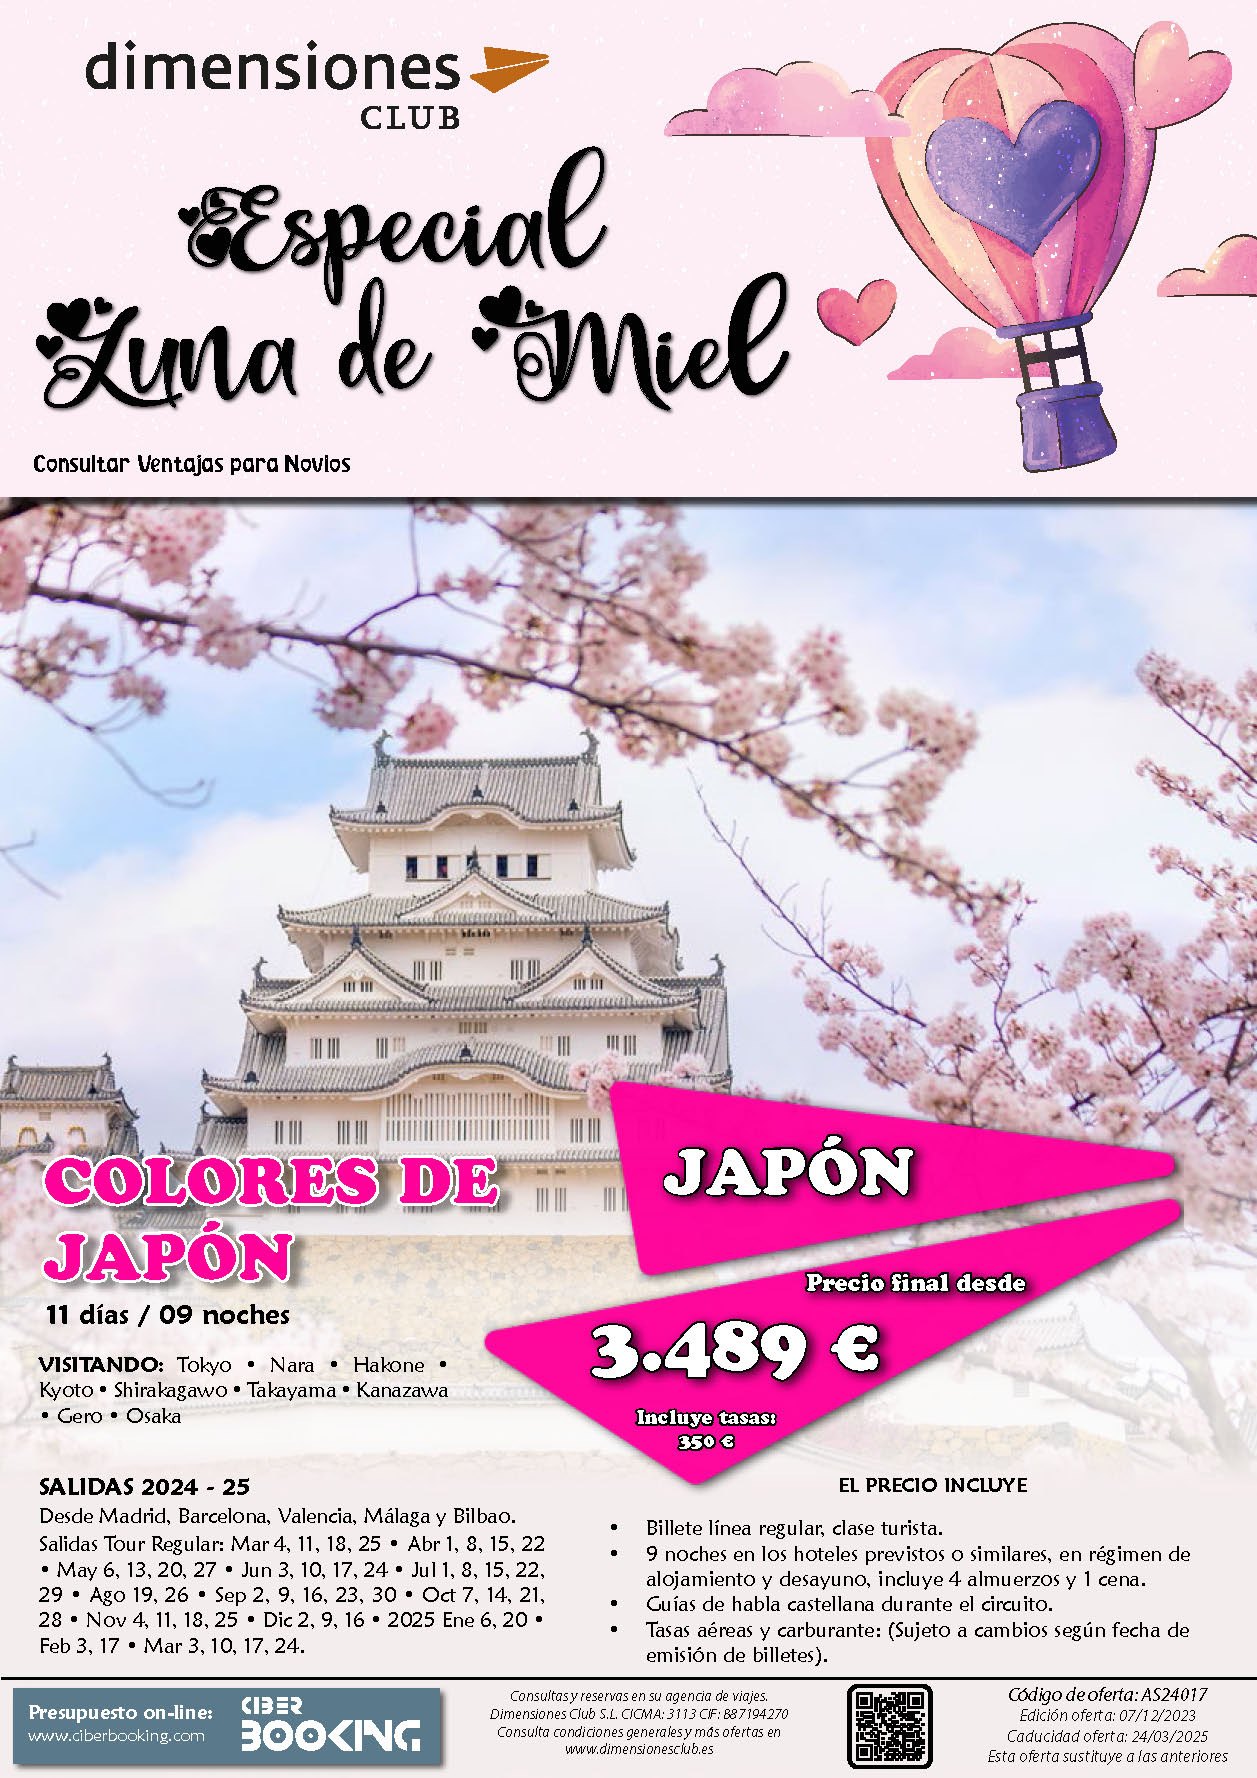 Oferta Dimensiones Club Luna de Miel Colores de Japon 11 dias salidas desde Madrid Barcelona Bilbao Valencia Malaga Enero 2024 a Marzo 2025